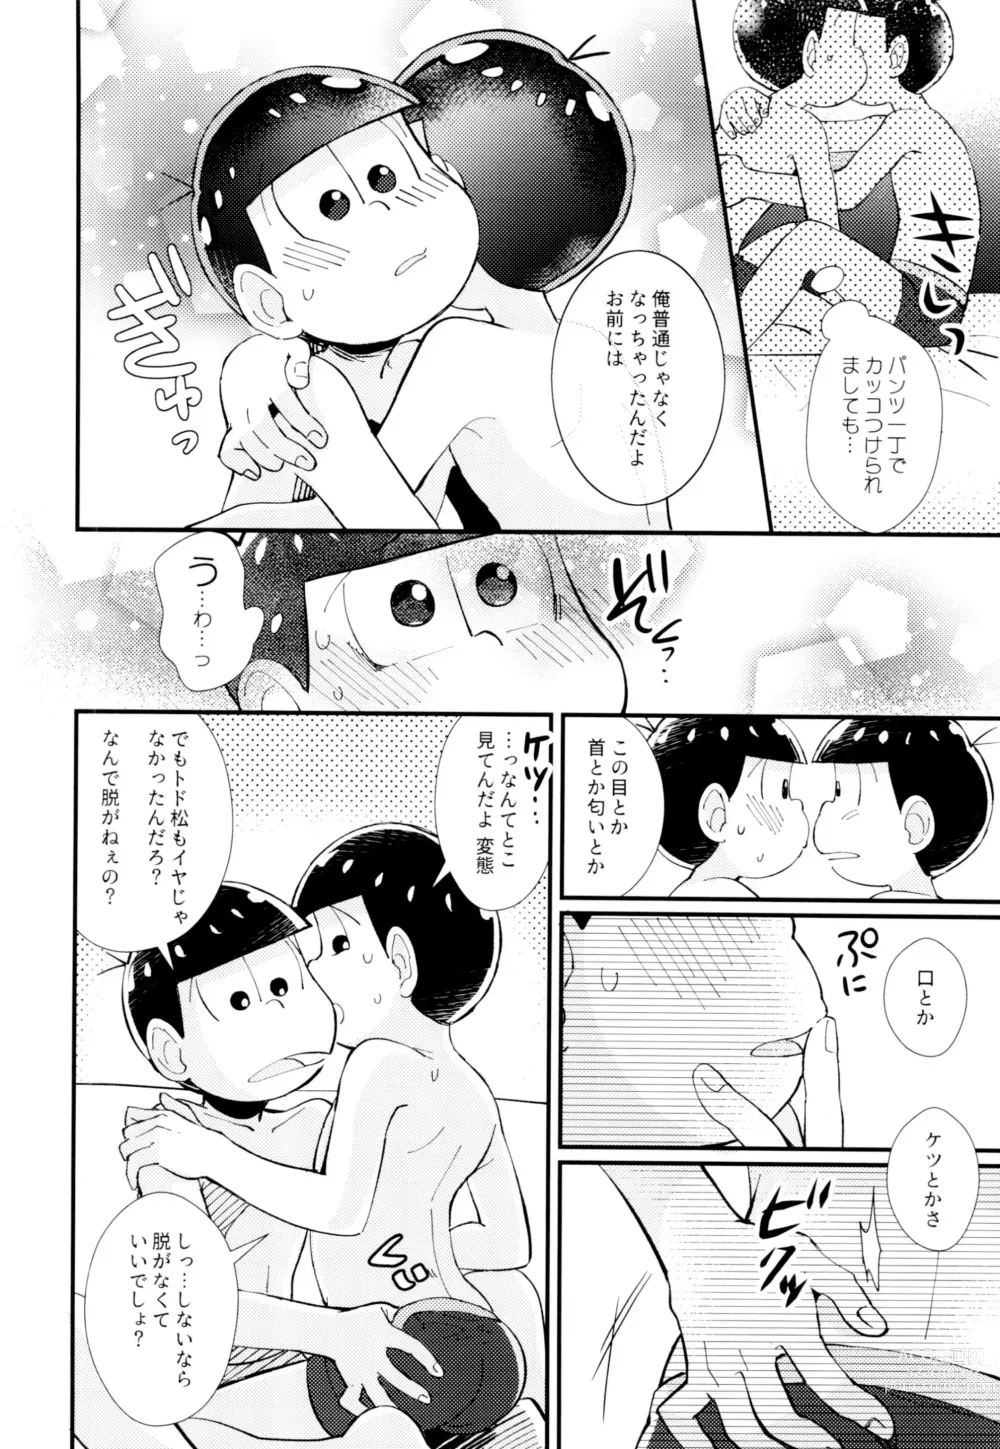 Page 40 of doujinshi Hajimari wa, Yomichi no Kaori.